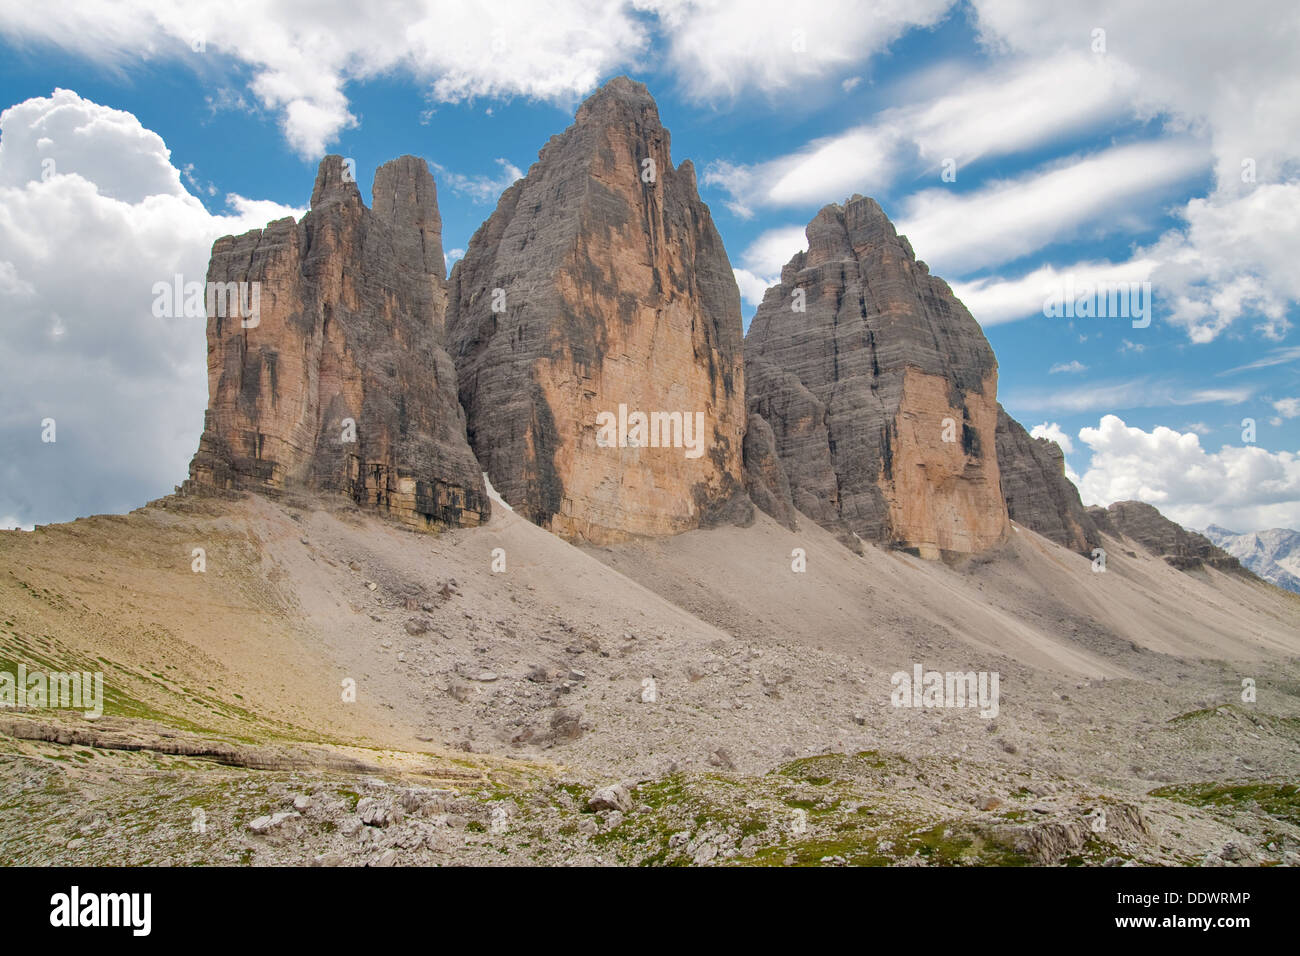 Drei Zinnen, dolomitas, Alpes, Italia. Foto de stock